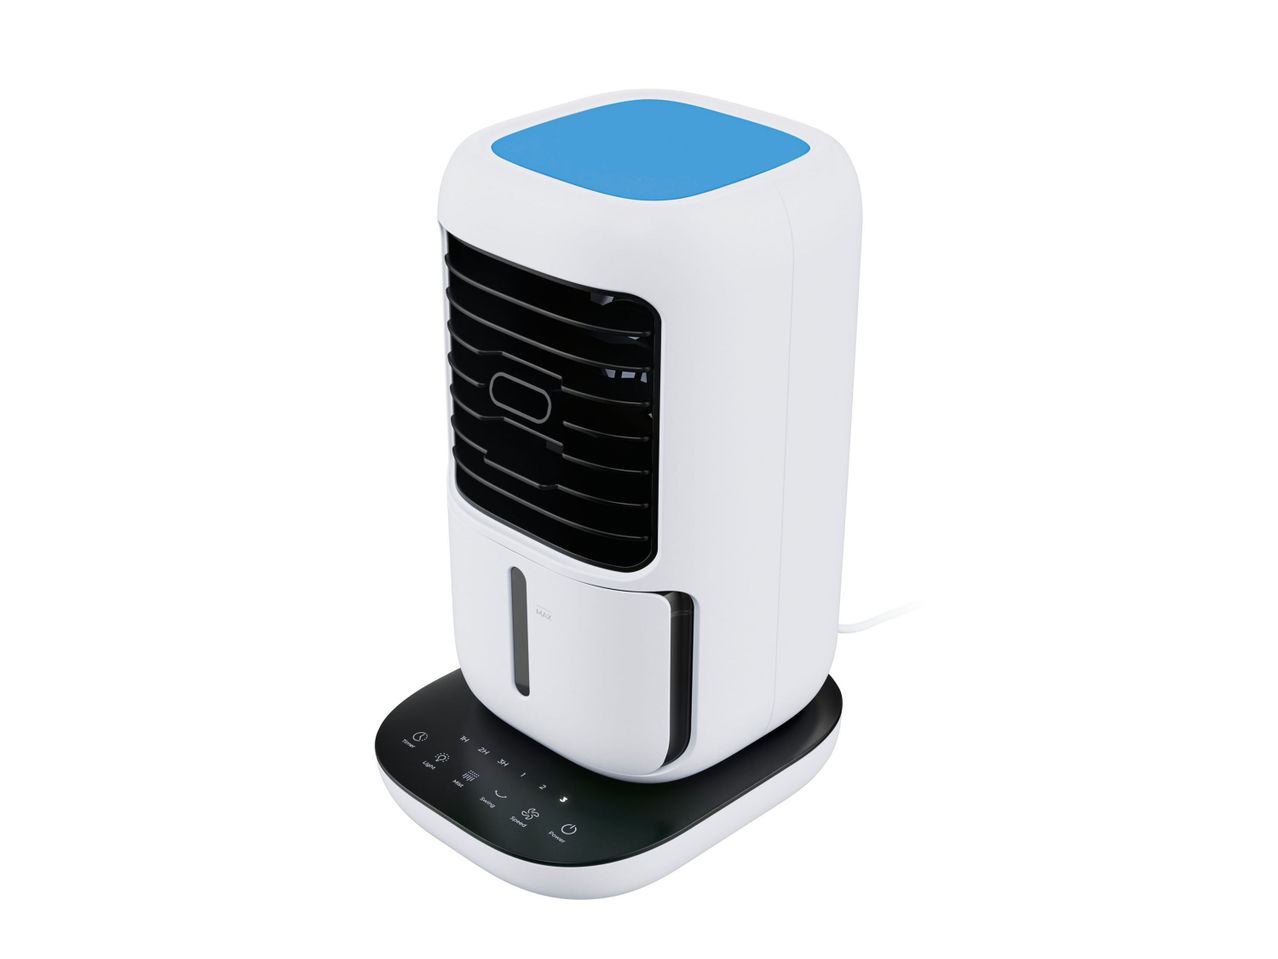 Mini refrigeratore ad aria con funzione , prezzo 34,99 EUR 
Mini refrigeratore ...